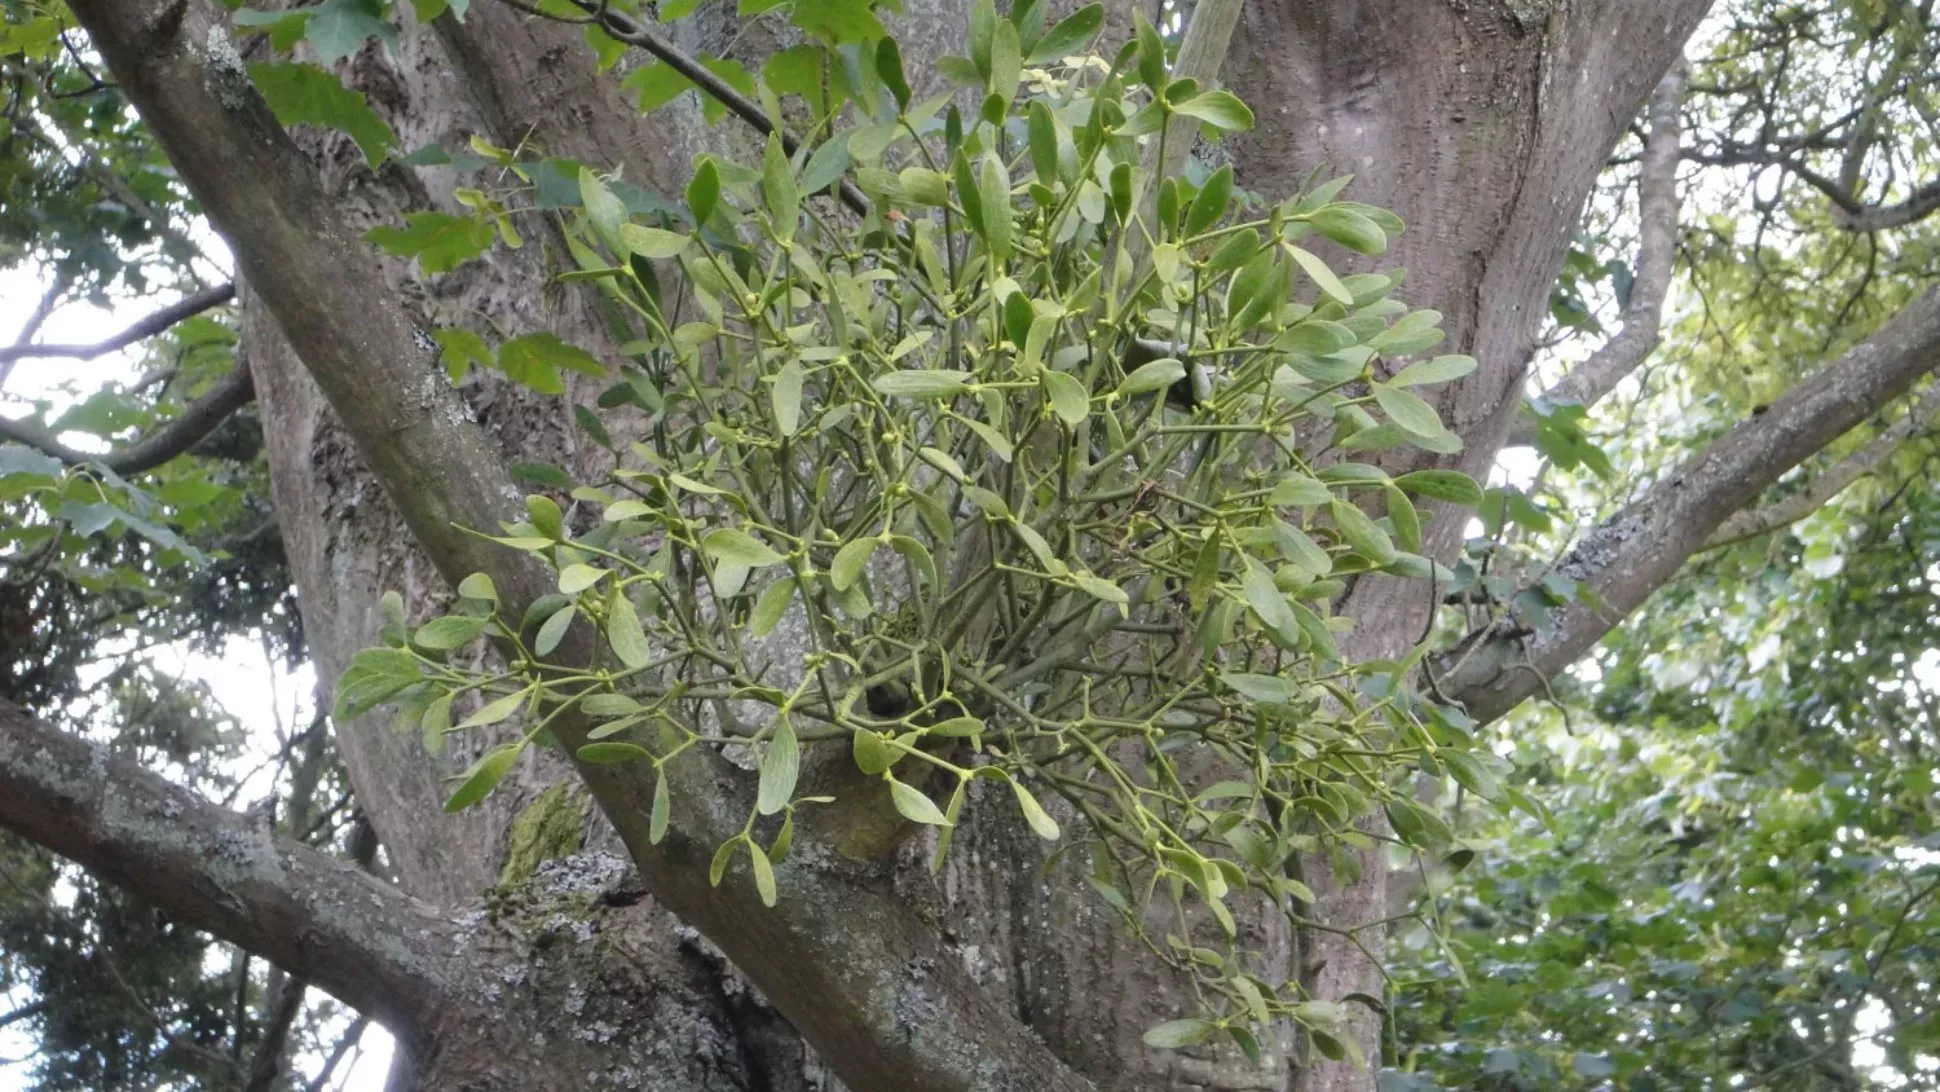 A bunch of mistletoe growing on a tree